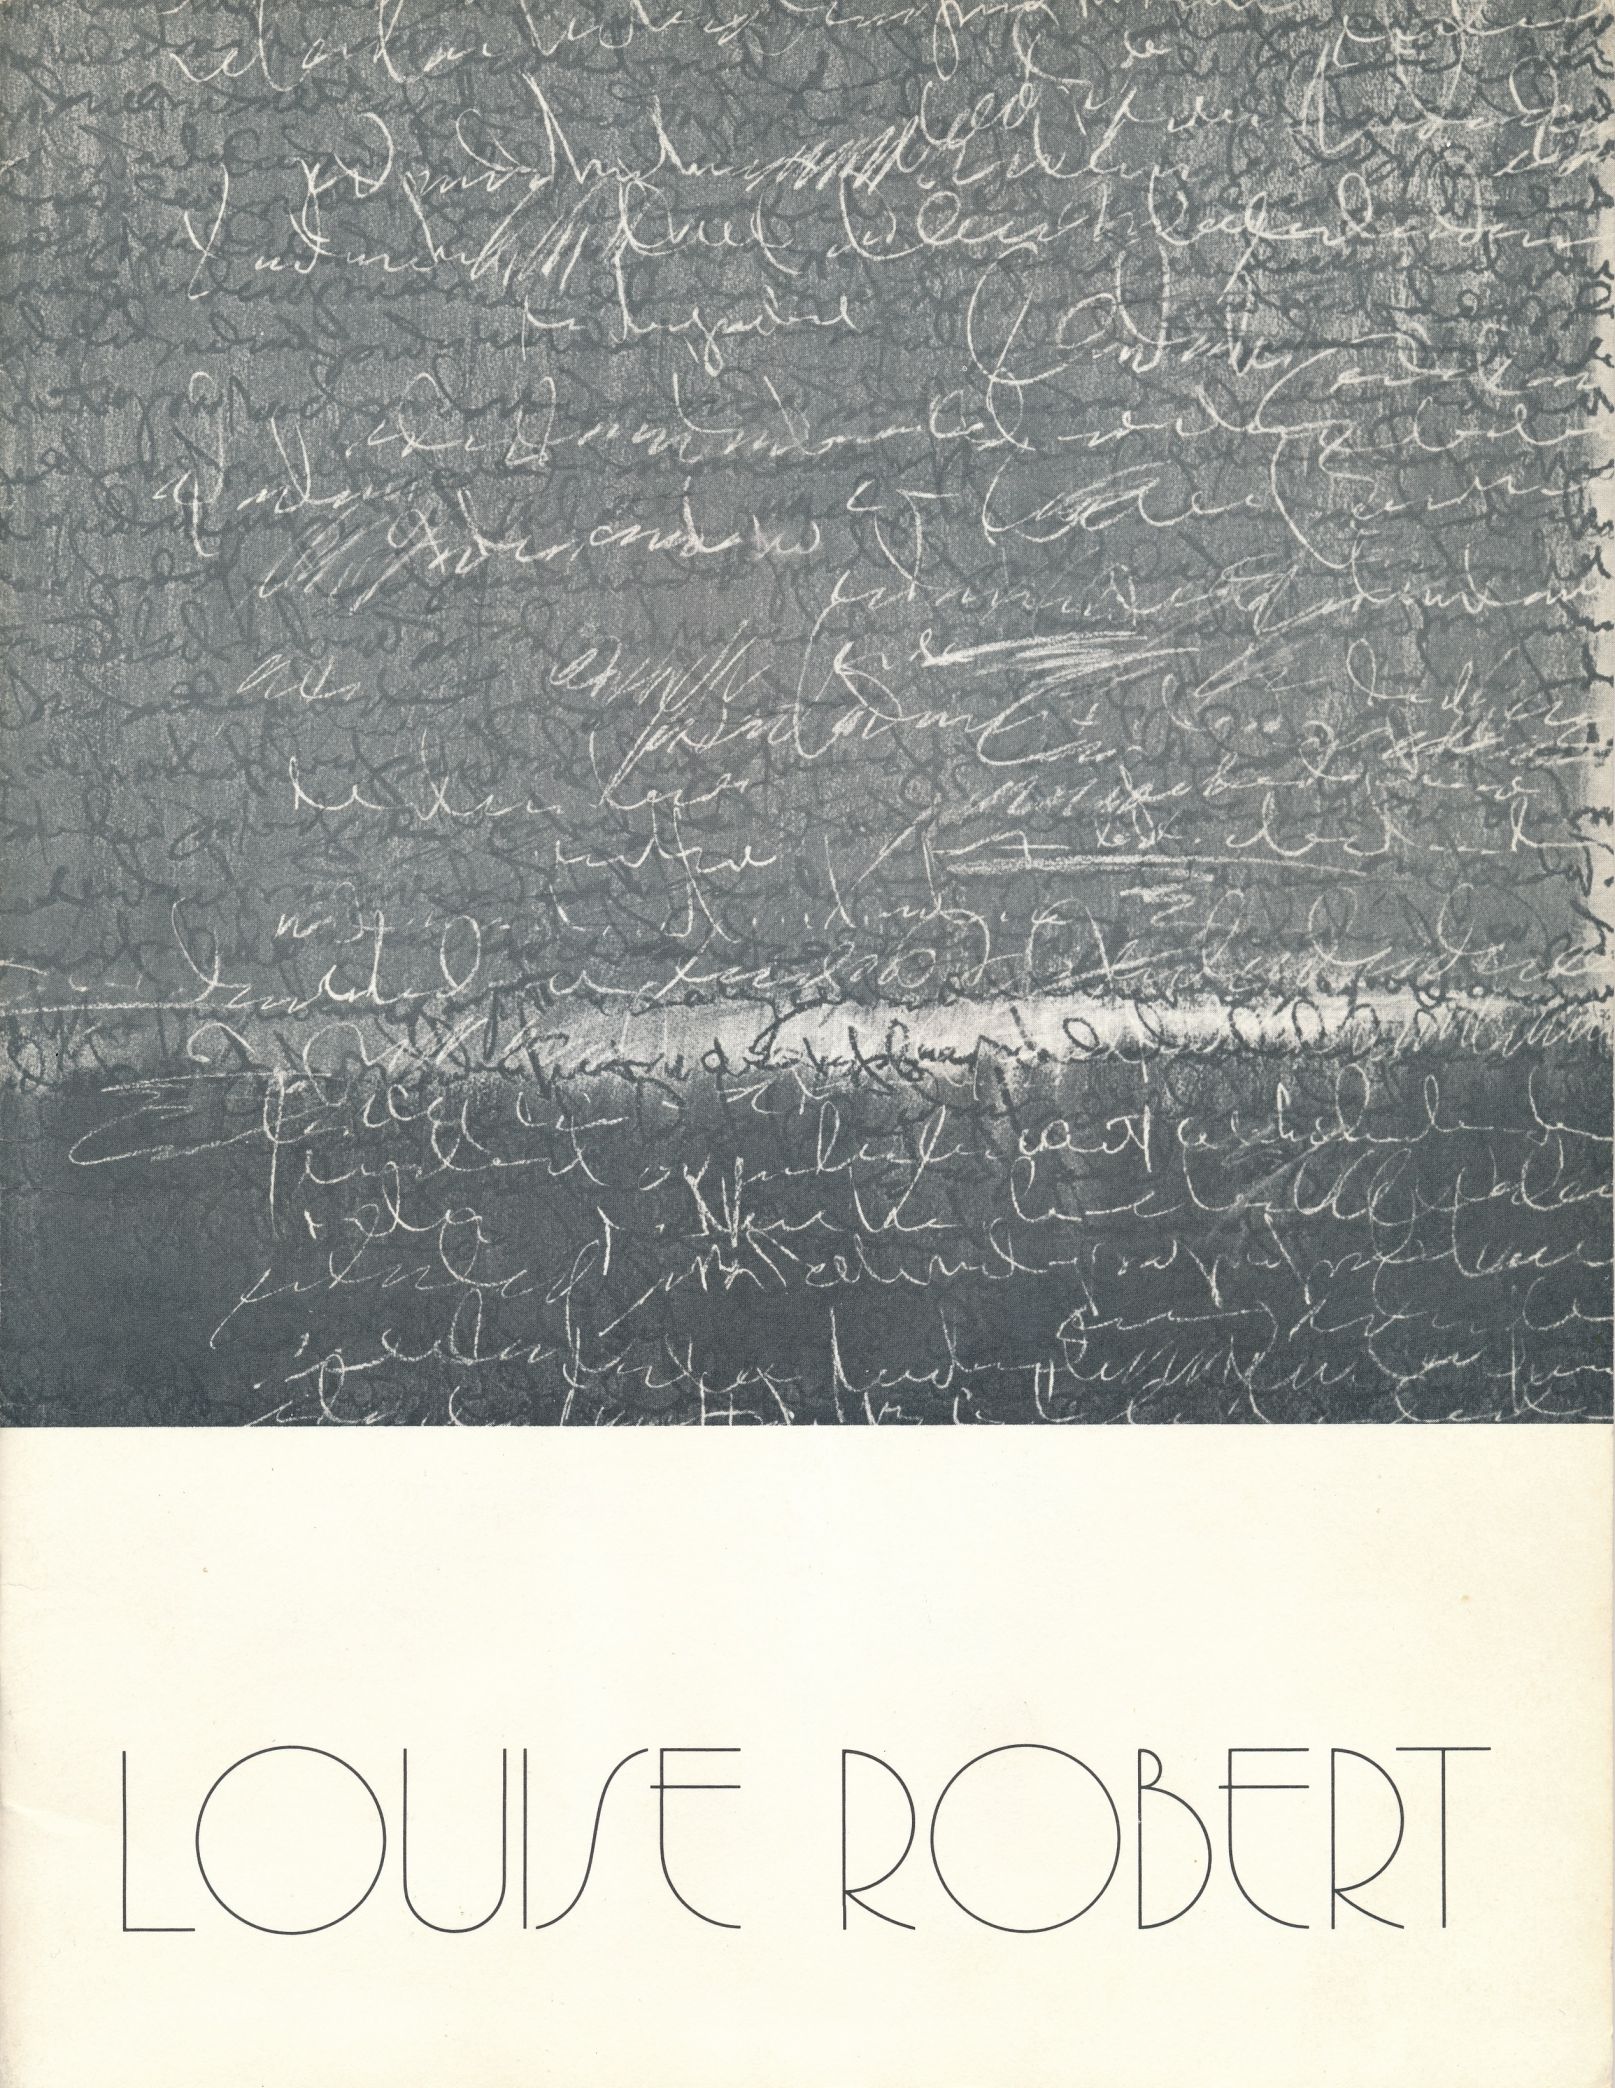 Couverture du catalogue d’exposition : Louise Robert, Montréal, Galerie Curzi, 1977, texte de René Payant, « Images d’écriture ».